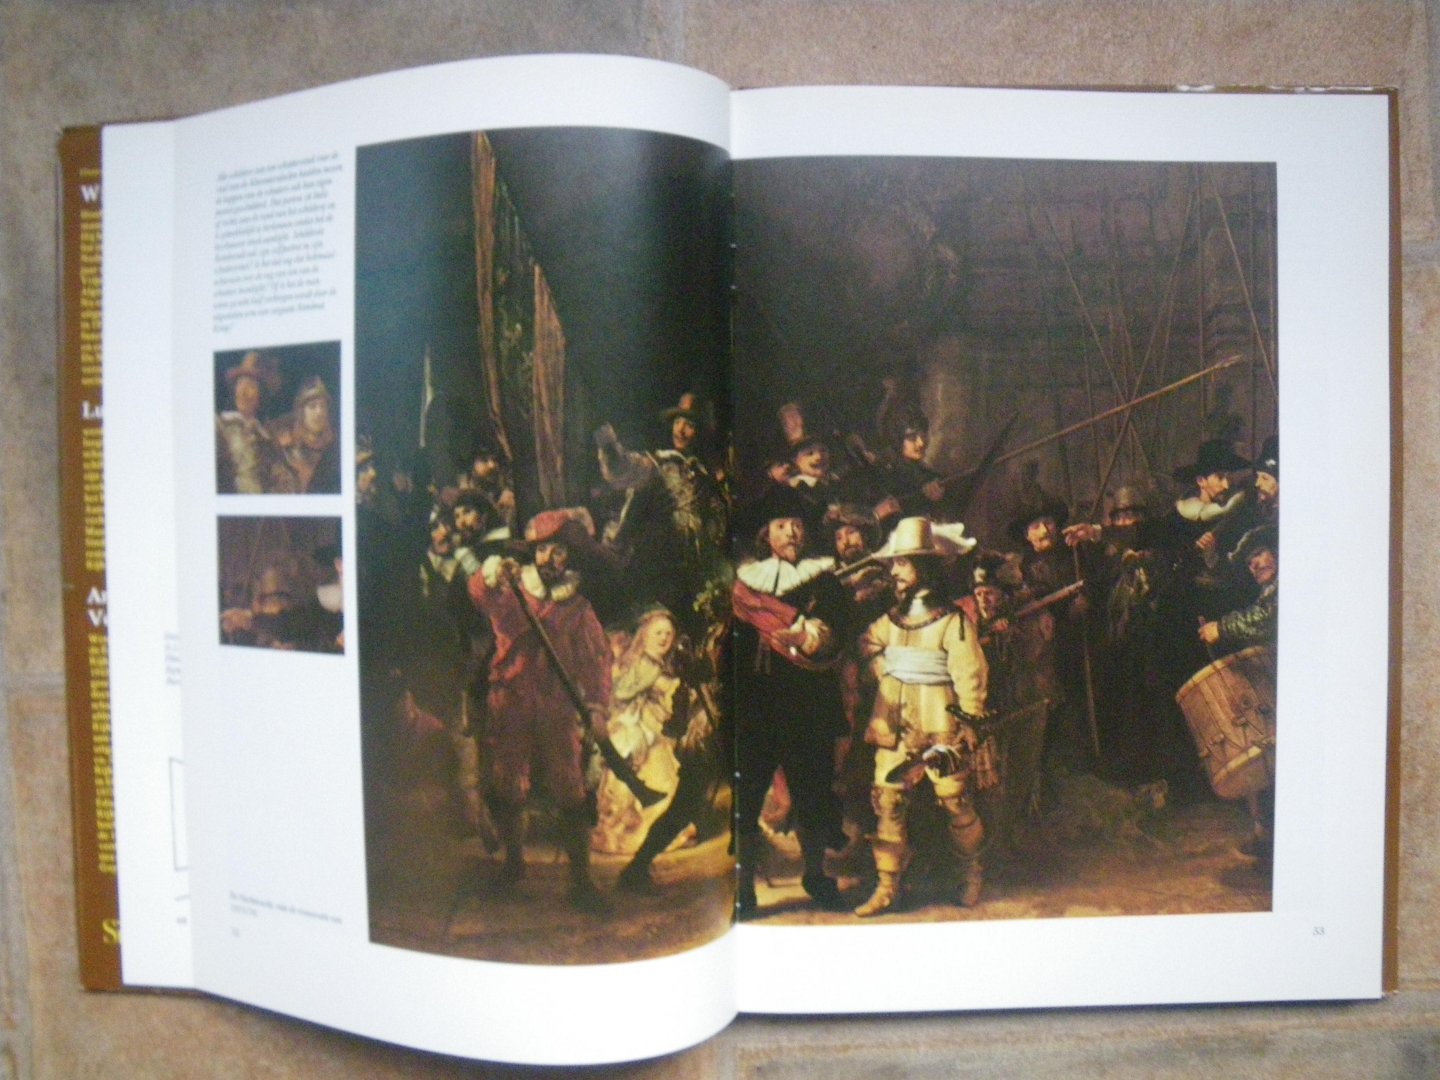 Hijmans / Kuiper / Vels Heijn - Rembrandts Nachtwacht. Het vendel van Frans Banning Cocq, de geschiedenis van een schilderij.